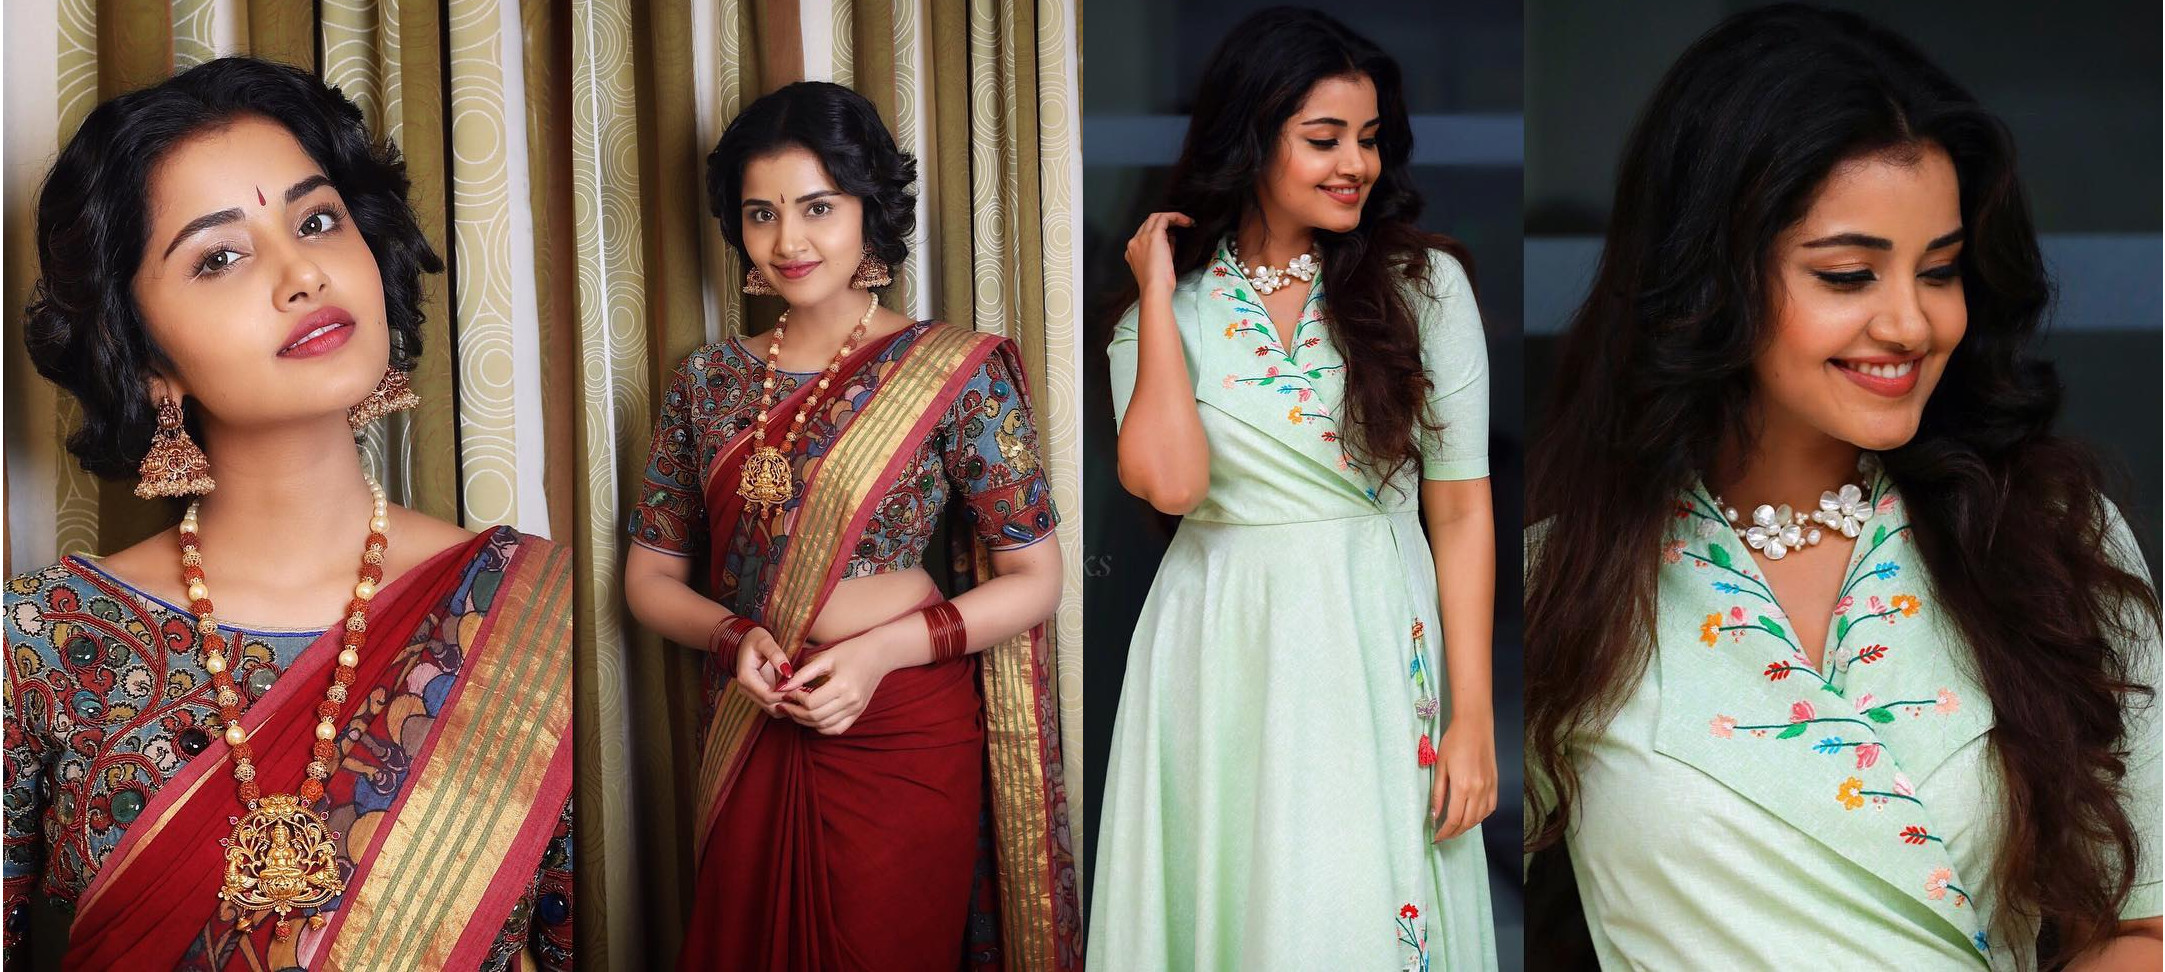 Actress Anupama Parameswaran Photos Instagram Hd Images - Anupama Parameswaran New Pic 2019 , HD Wallpaper & Backgrounds